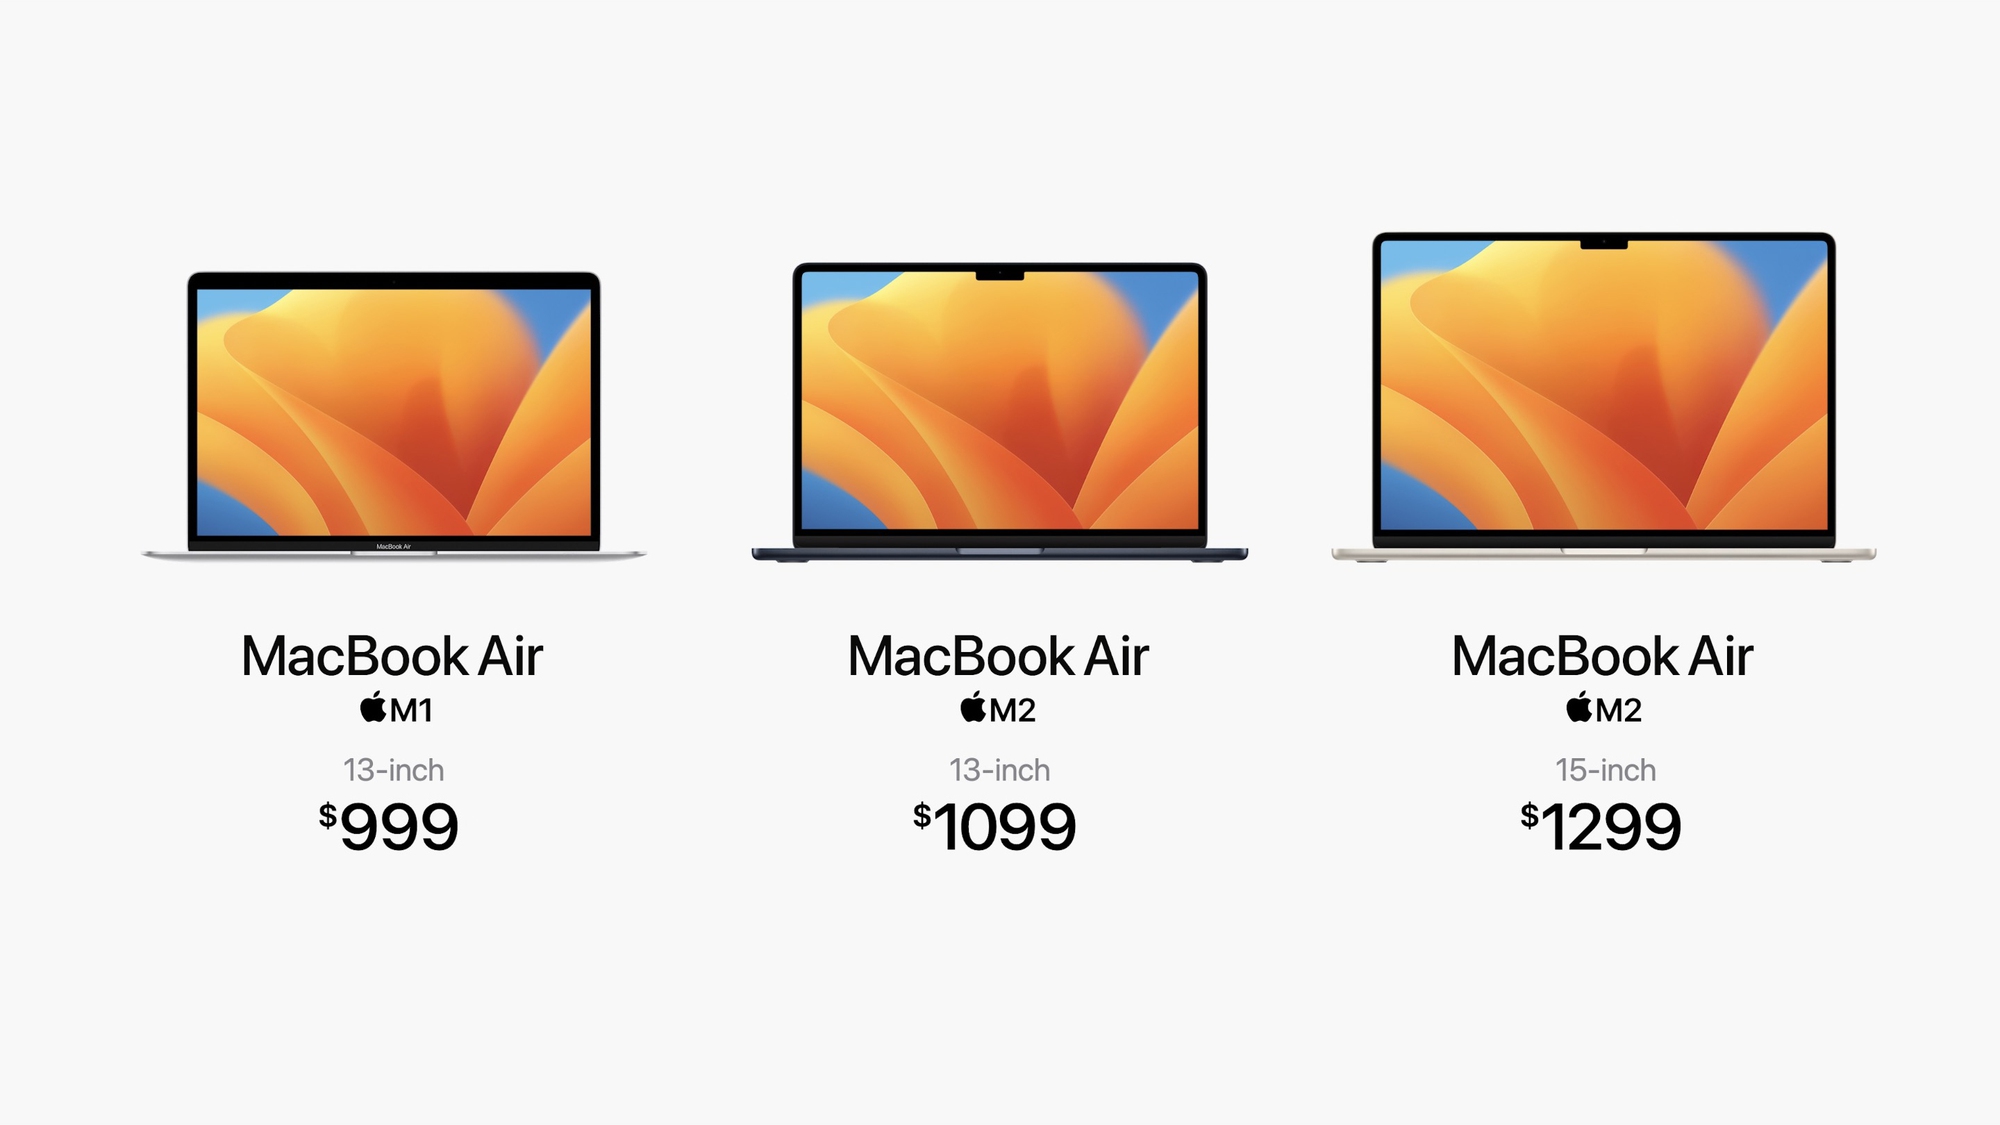 MacBook Air 15 inch chính thức: Mỏng nhất thế giới, chip Apple M2, pin 18 giờ, giá 1299 USD - Ảnh 4.